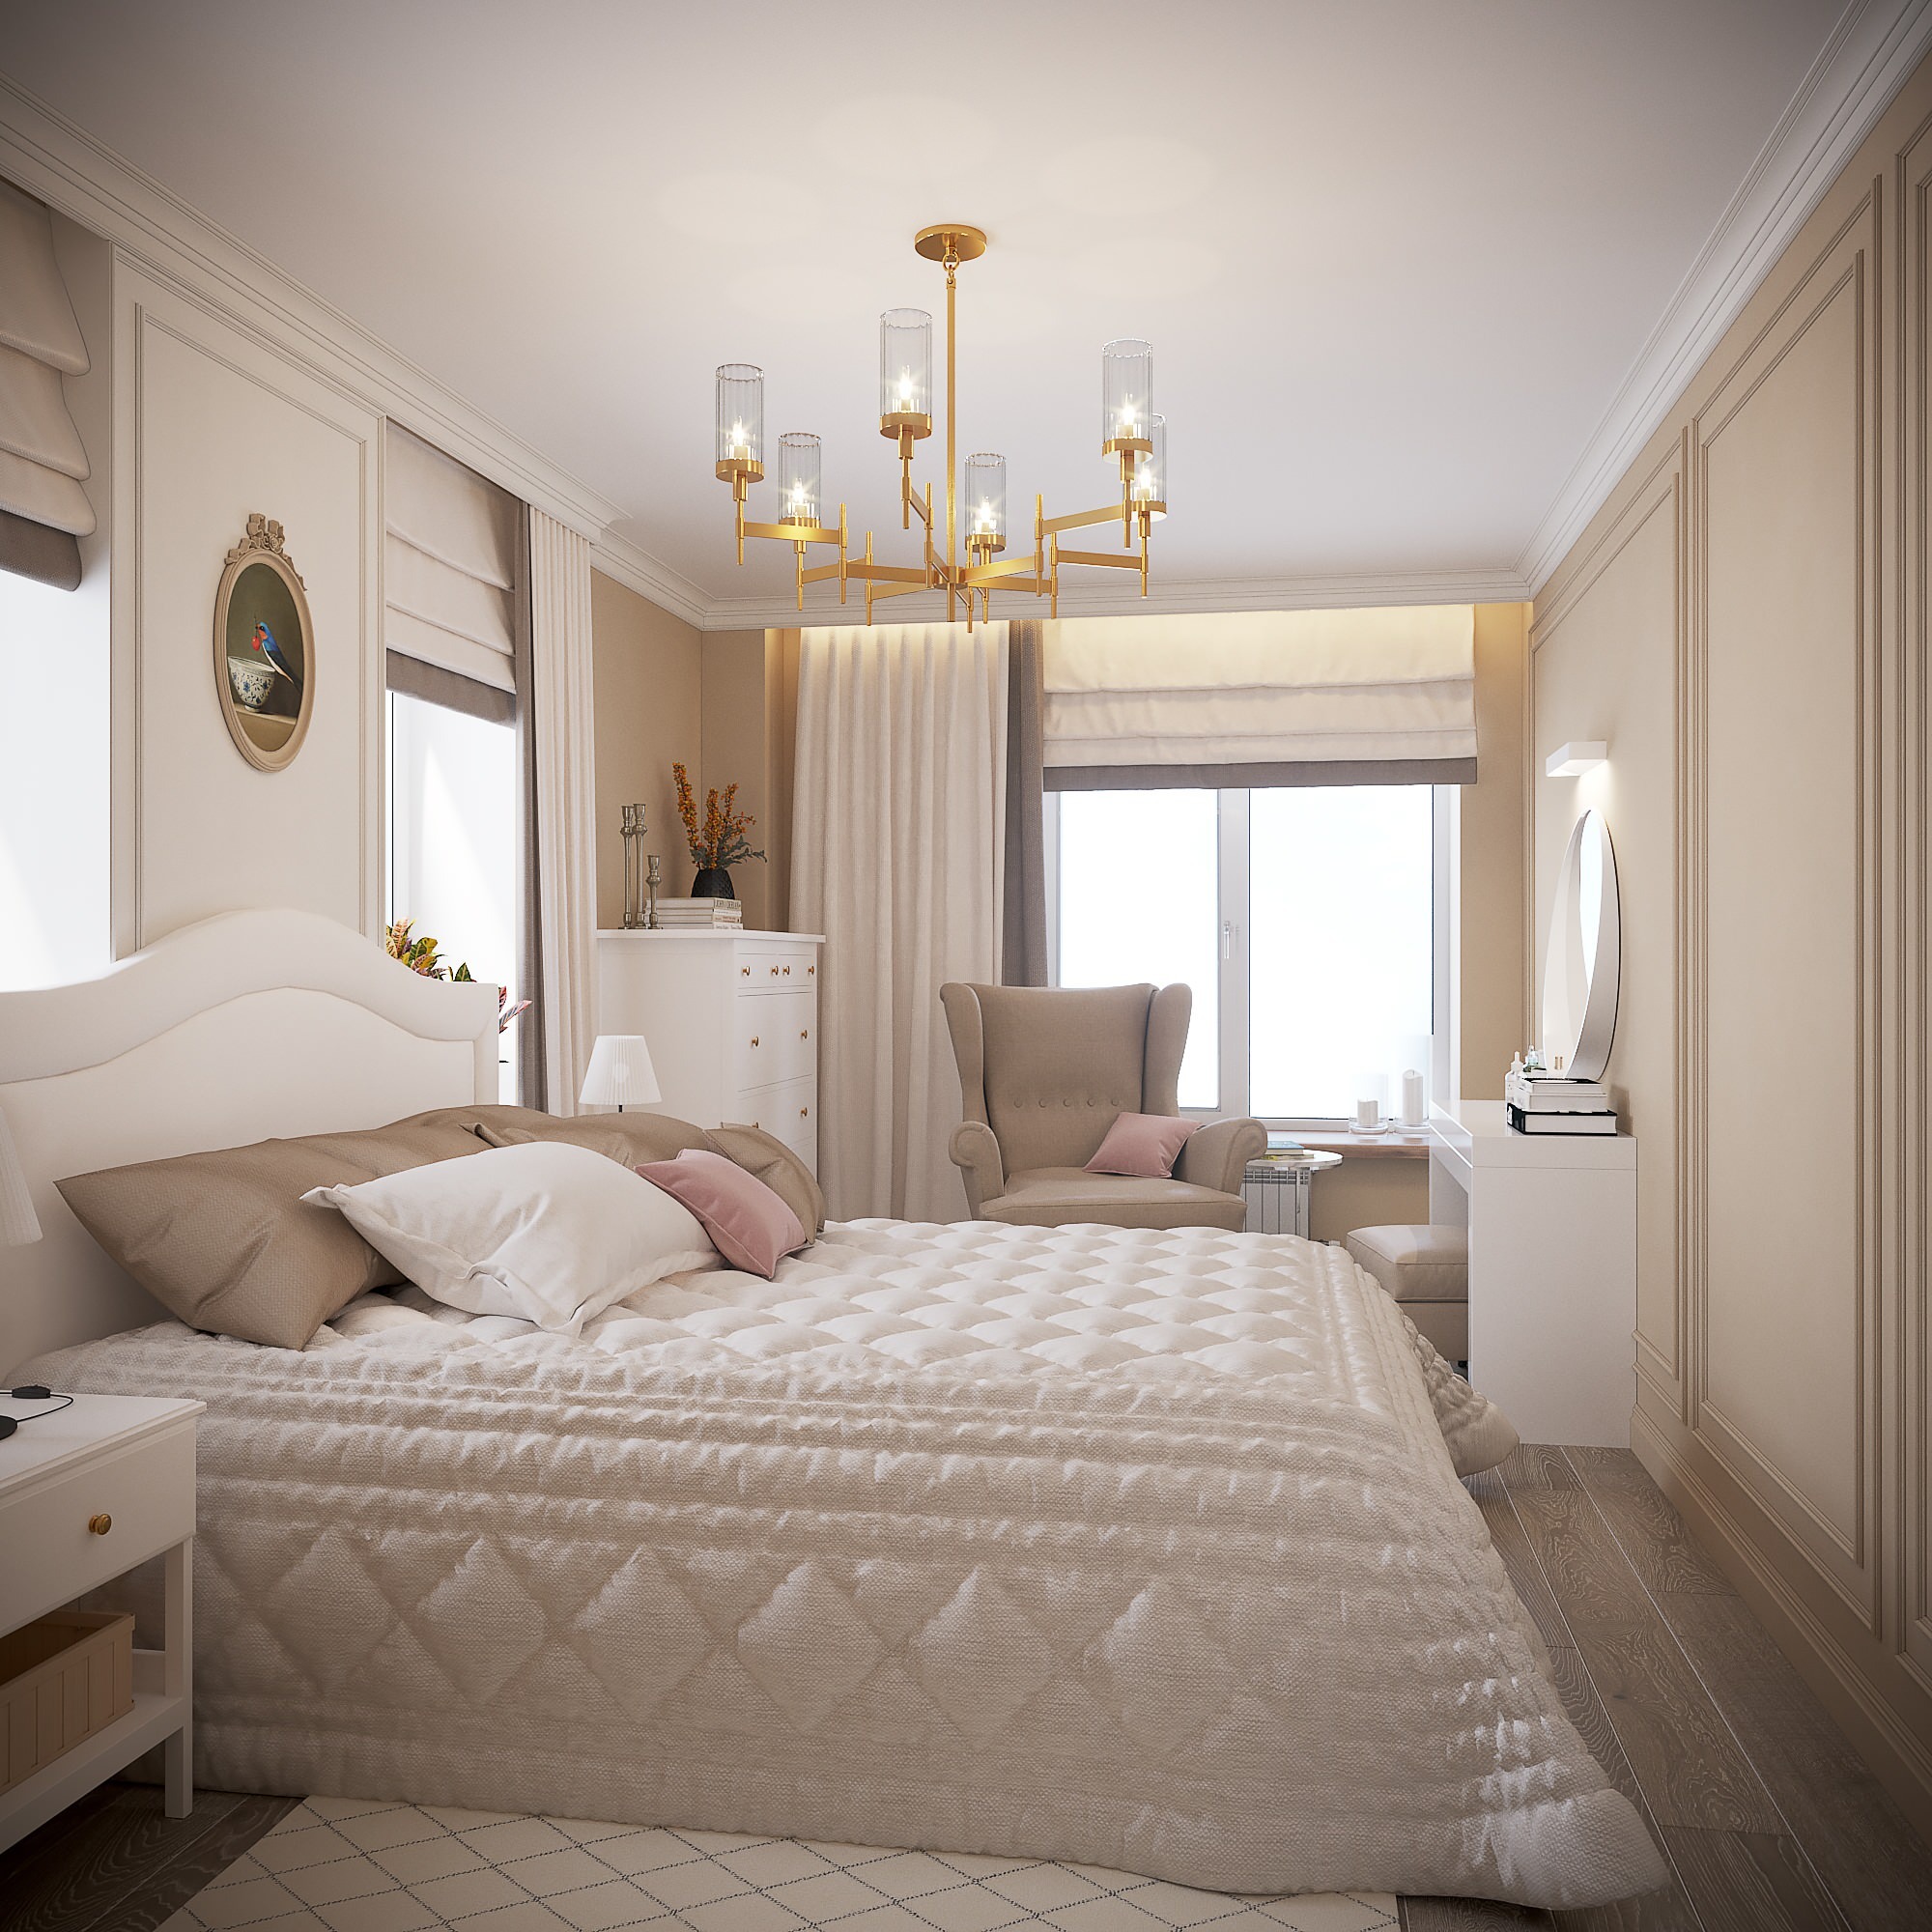 Интерьер спальни cветильниками над кроватью в классическом стиле и скандинавском стиле